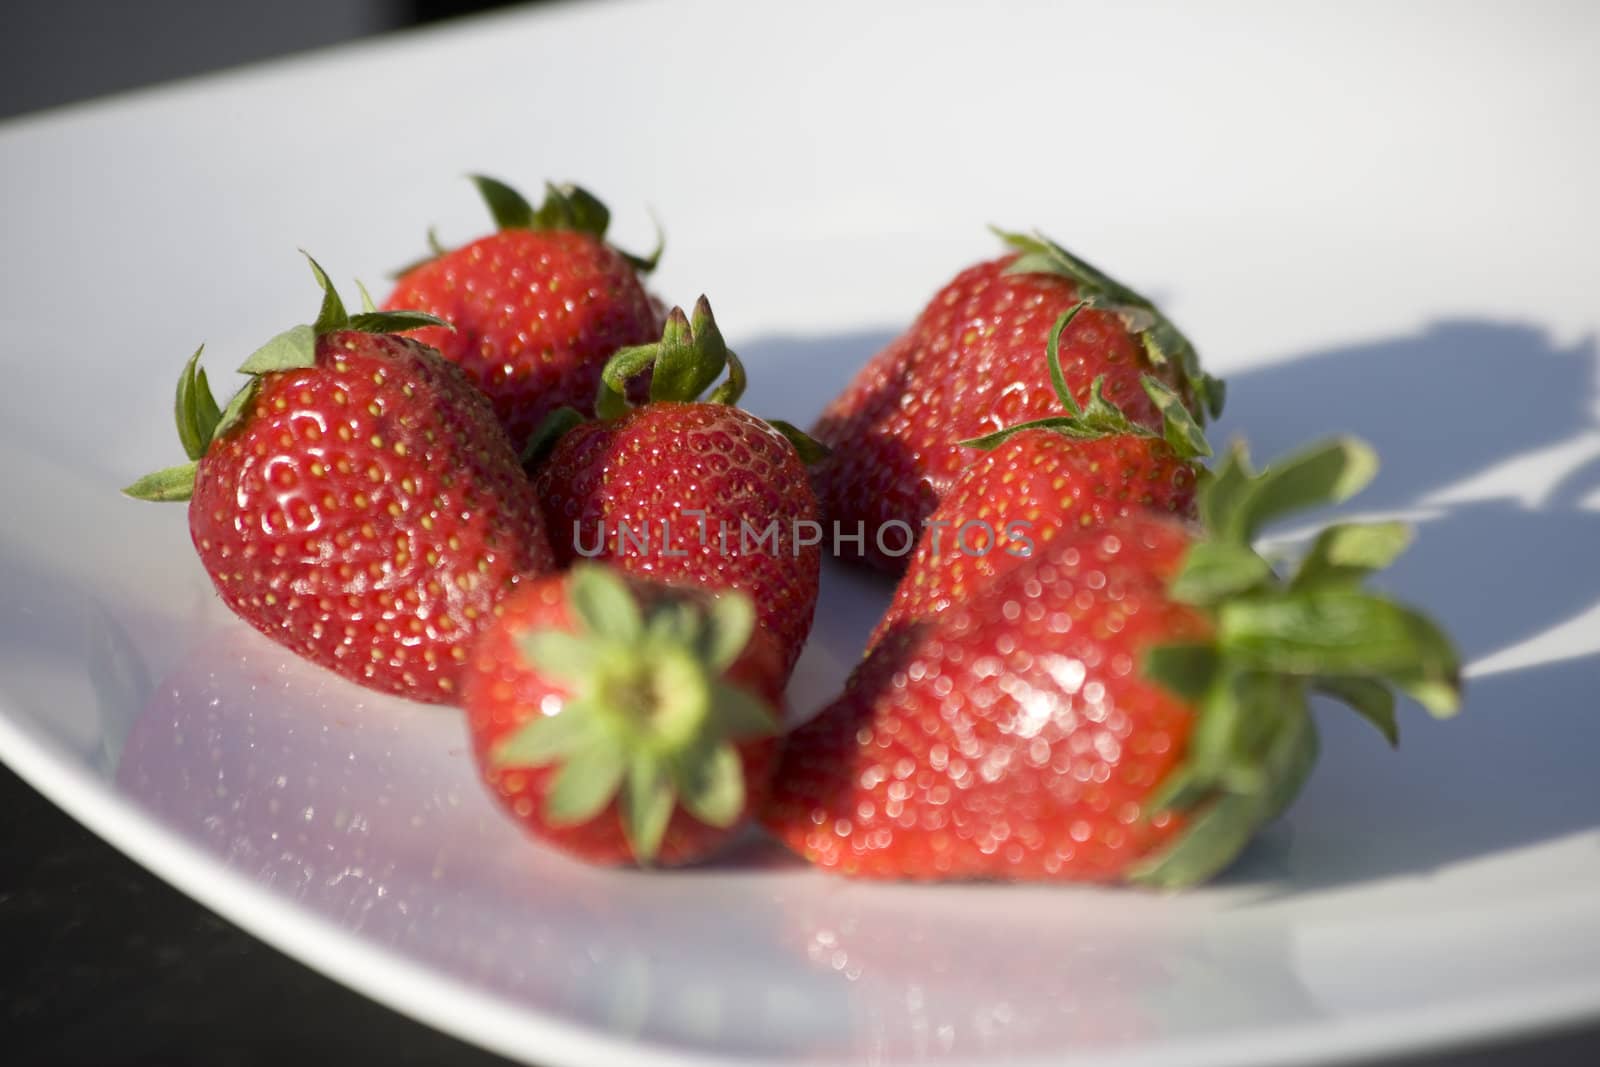 Strawberries by abg2000